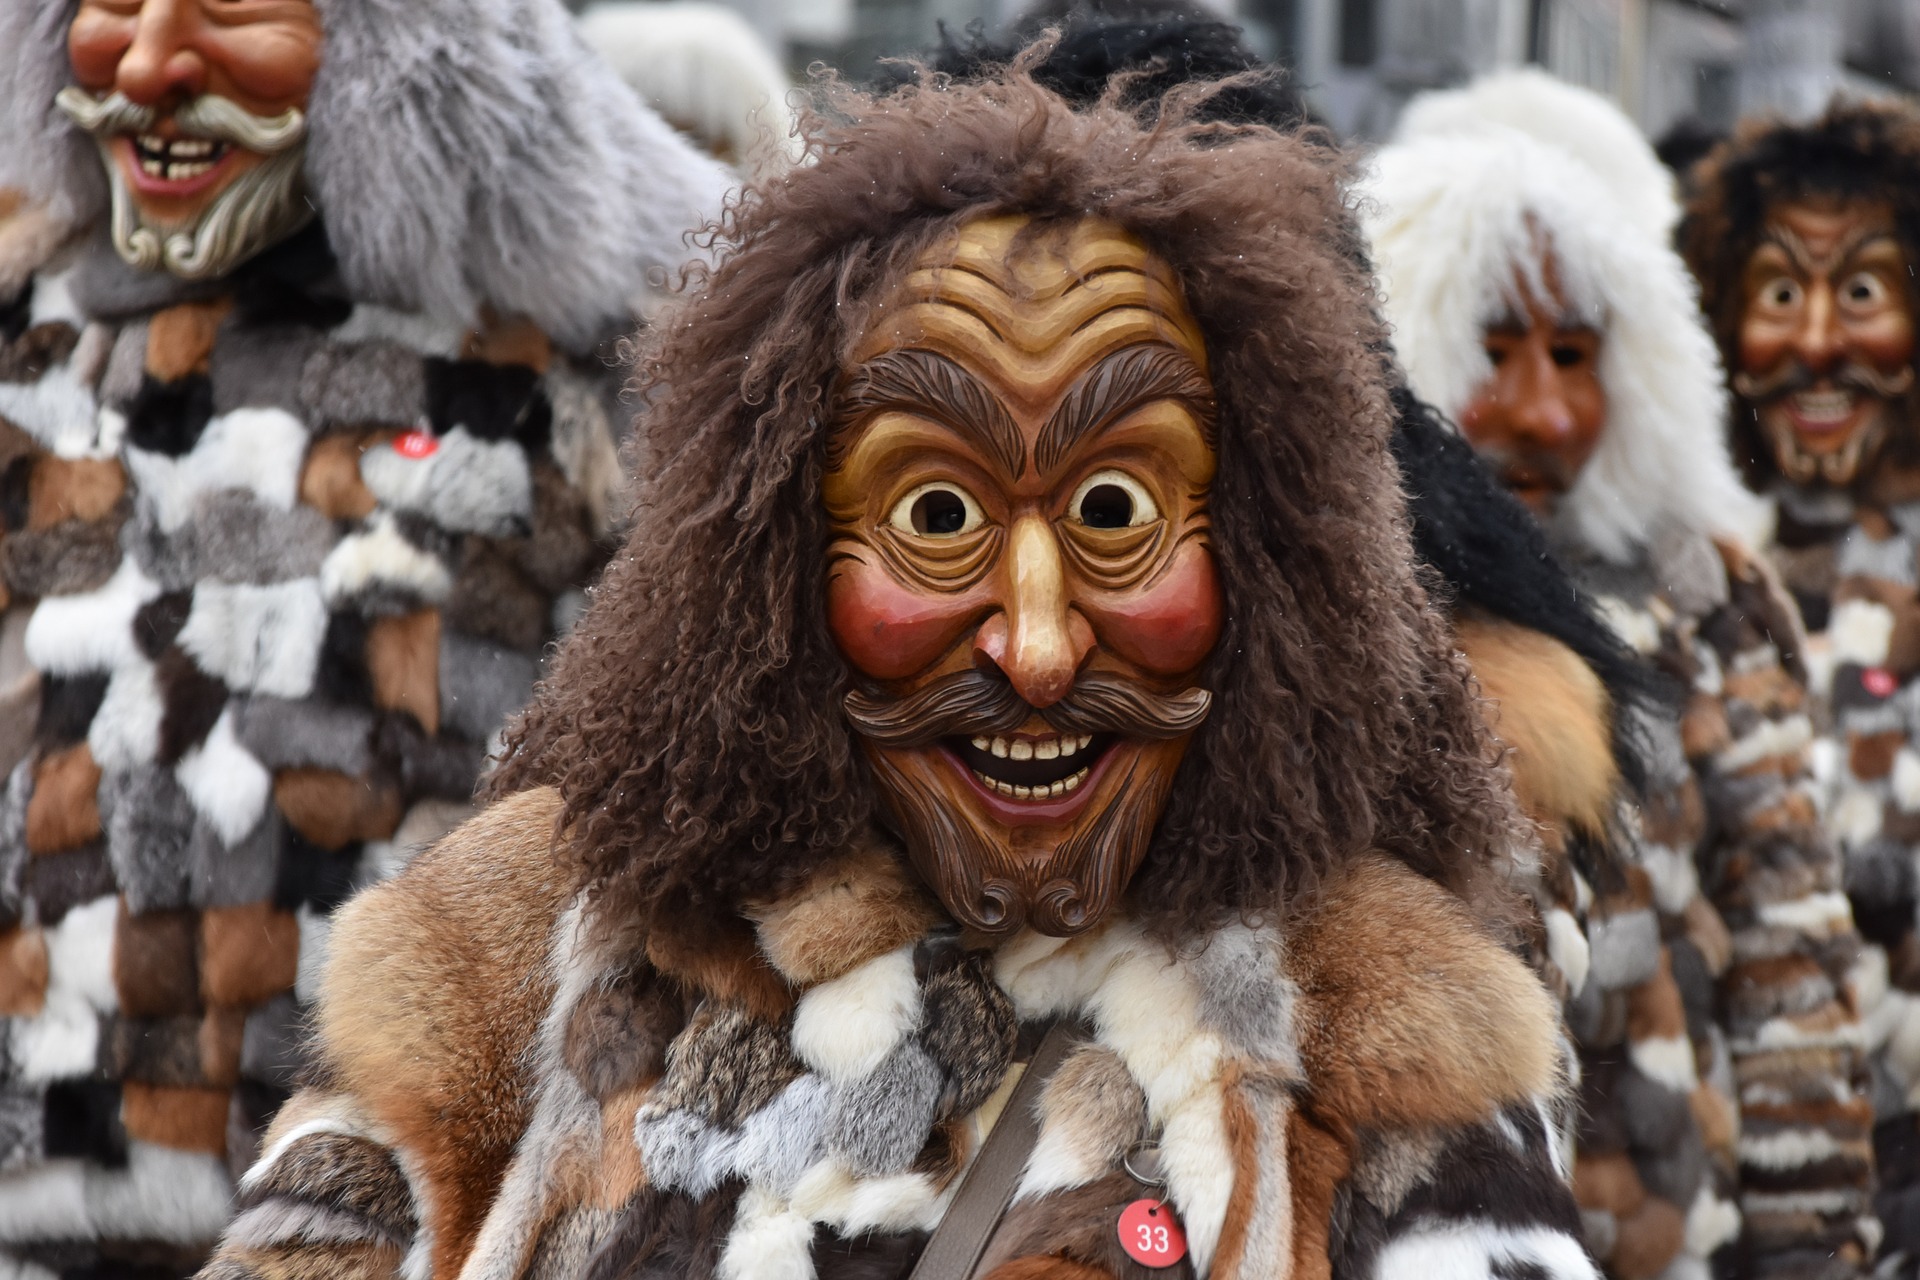 Déguisement de Mardi gras : comment fabriquer un masque de carnaval ? -  J'aime lire